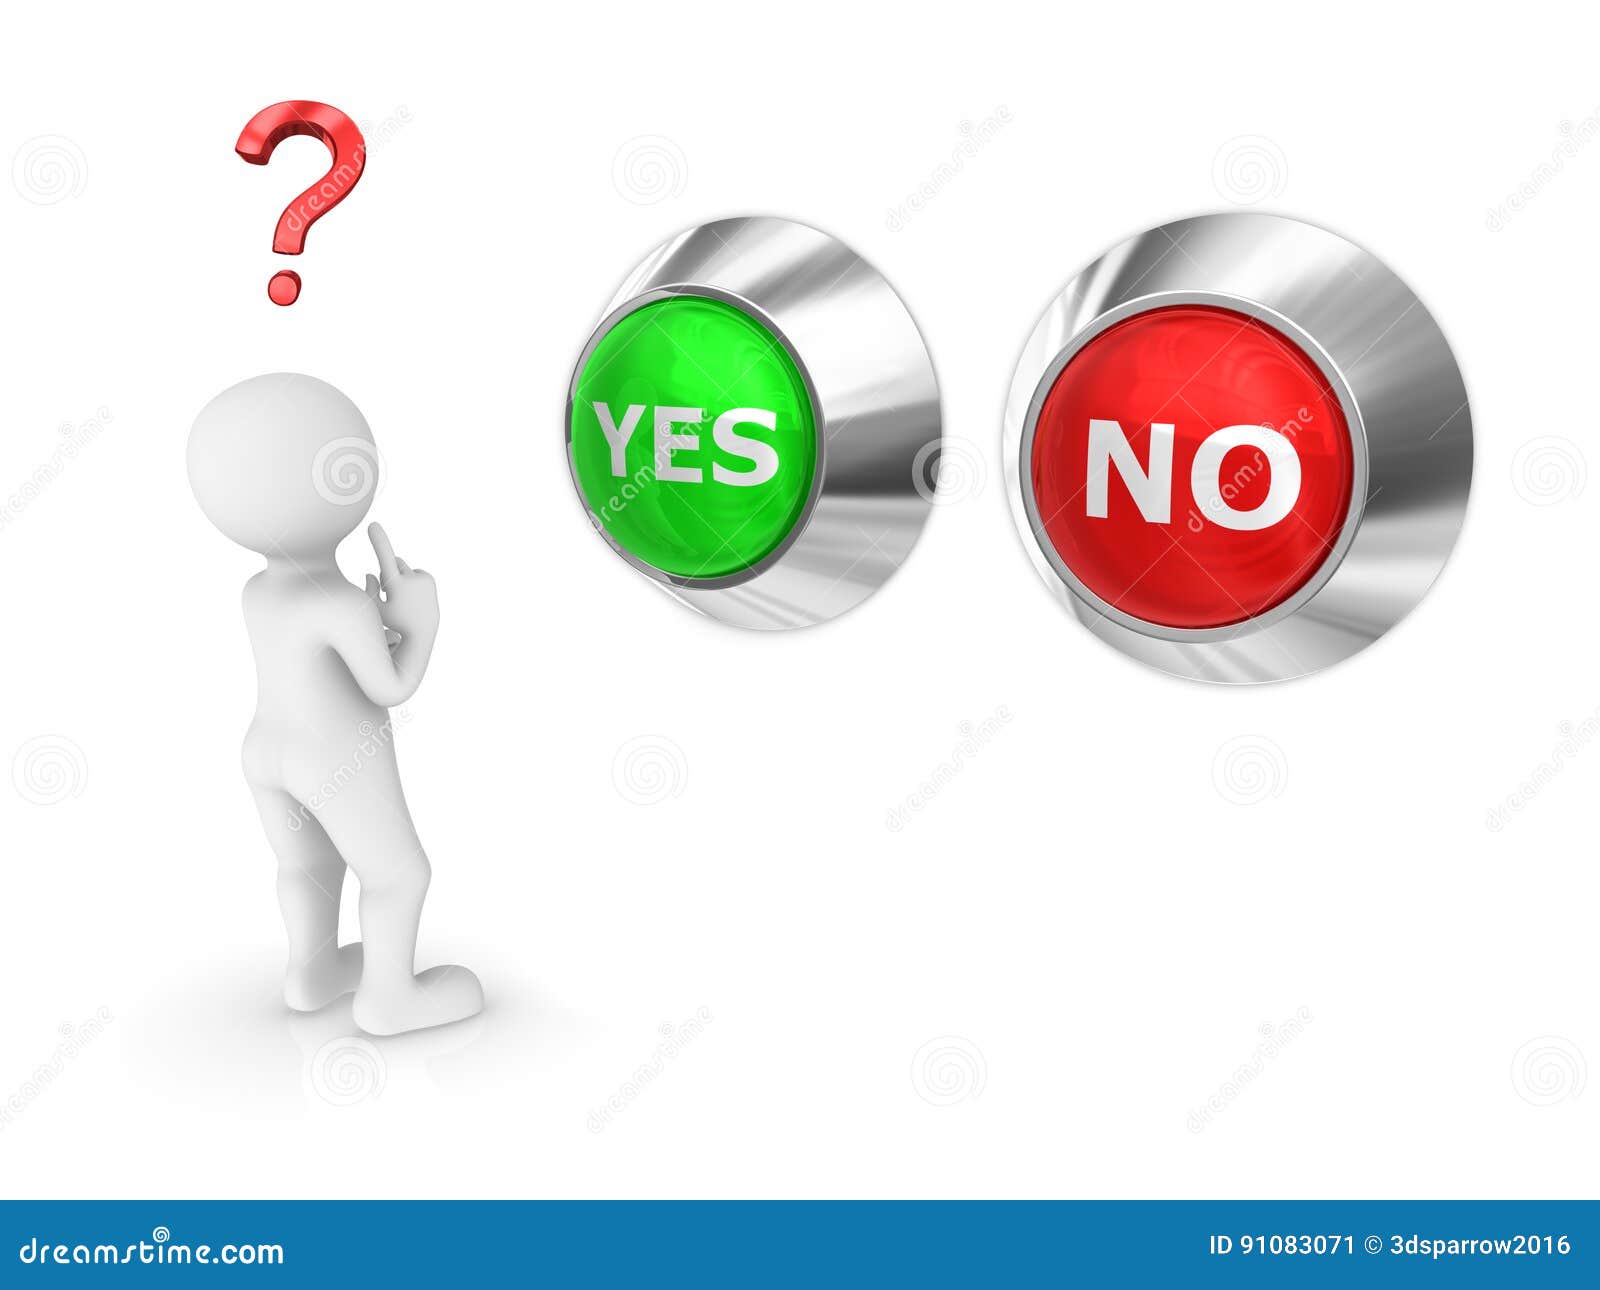 🎈 Was ist der Unterschied zwischen Nein und Nein?, unterscheidung von ...